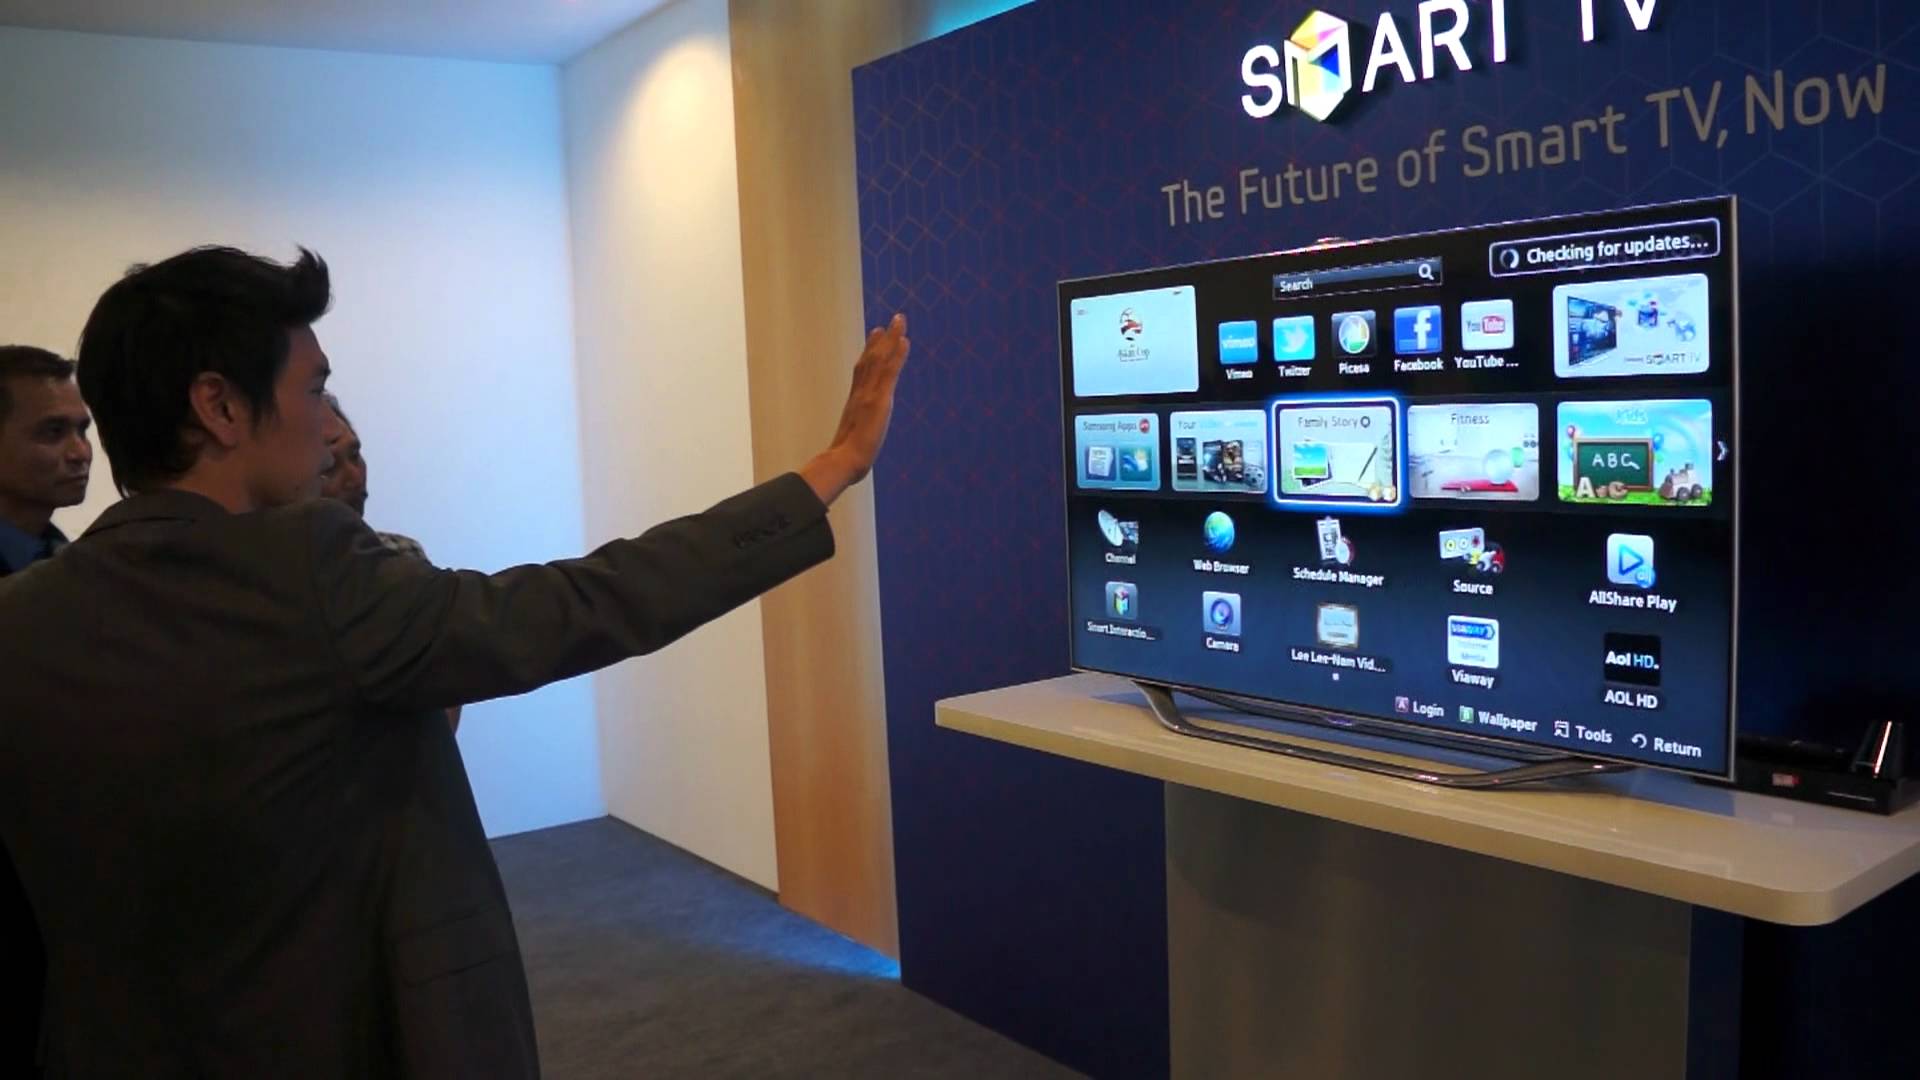 Samsung регистрации телевизора. Smart TV es8000. Управление телевизором жестами. Технологии Samsung TV. Smart TV управление жестами.